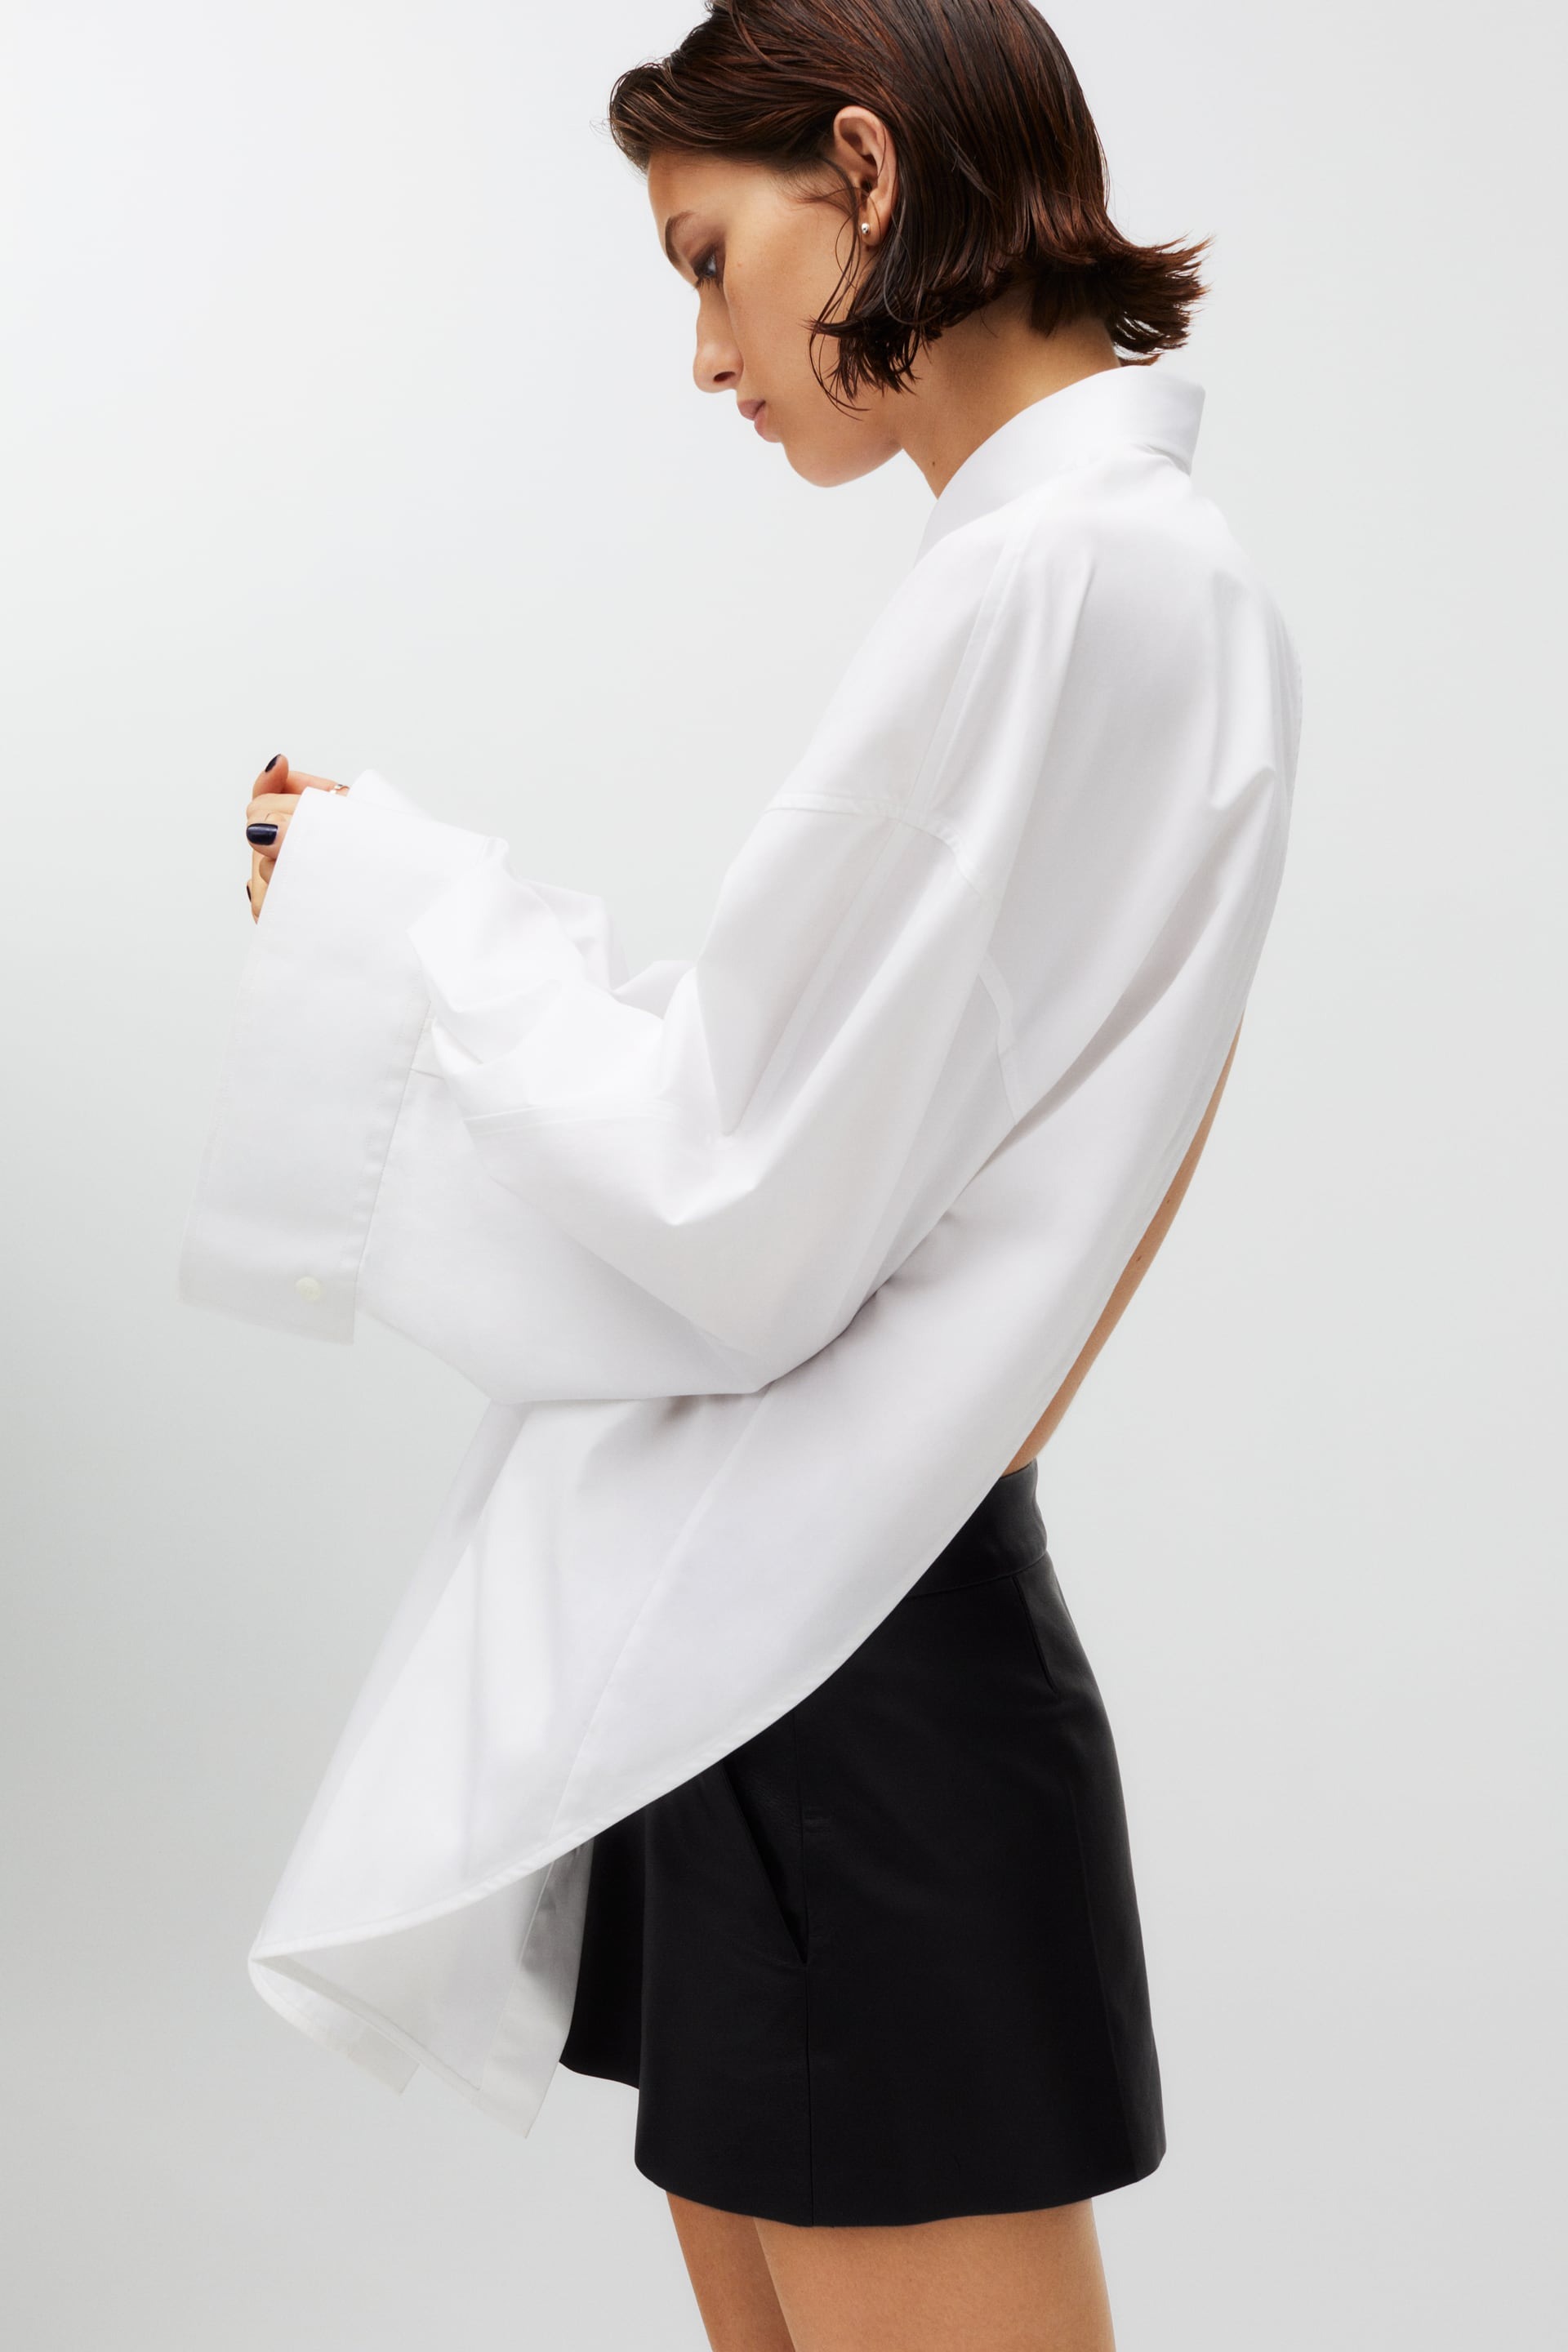 Kaia Gerber Designed 41 It-Girl Staples for Zara-I'd Buy These 15 ASAP